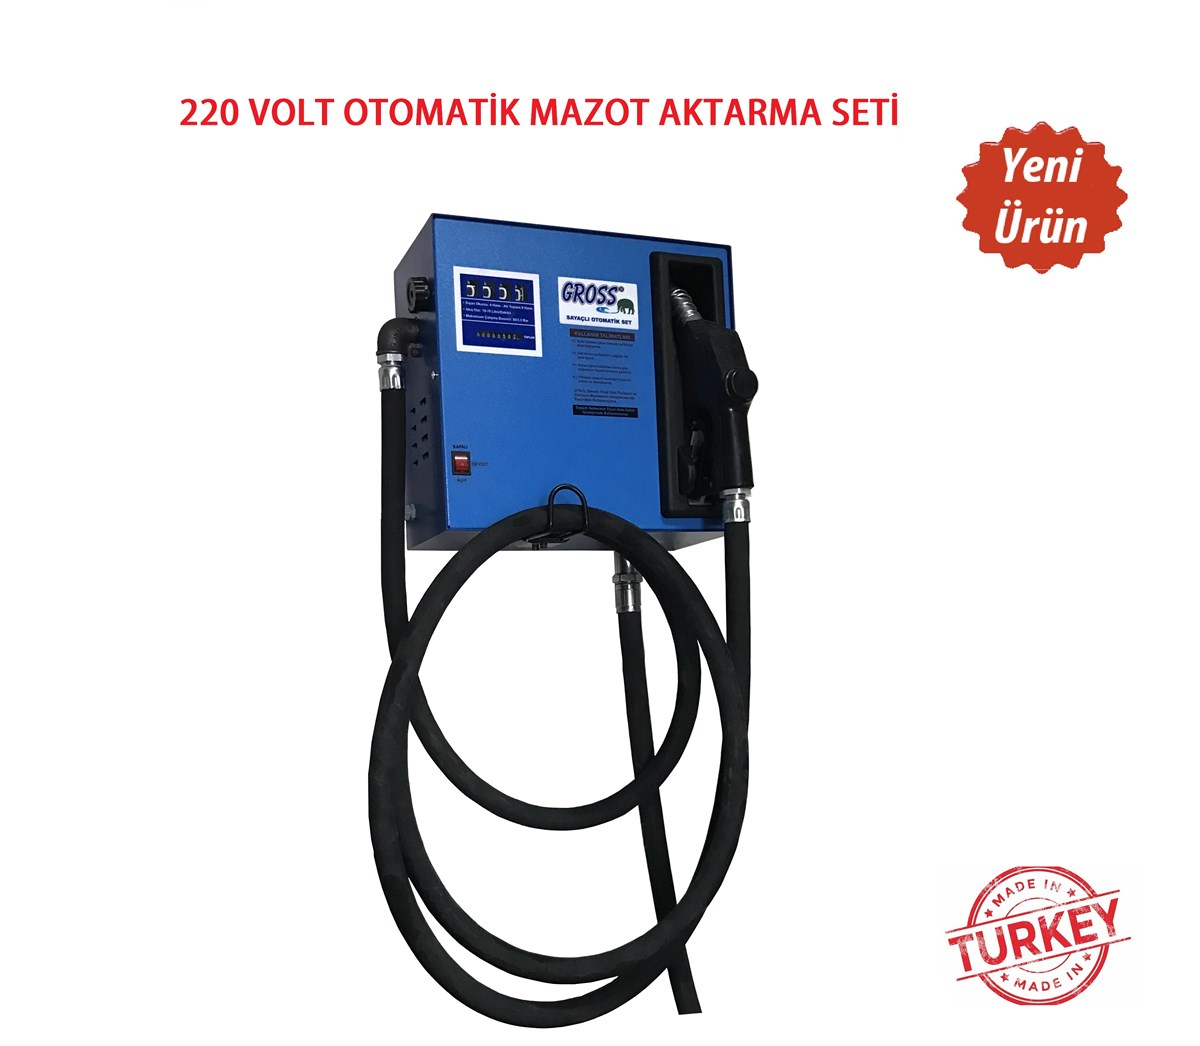 220 Volt Otomatik Mazot Aktarma Pompası